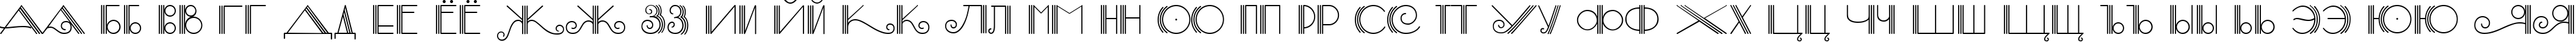 Пример написания русского алфавита шрифтом Samba DecorC